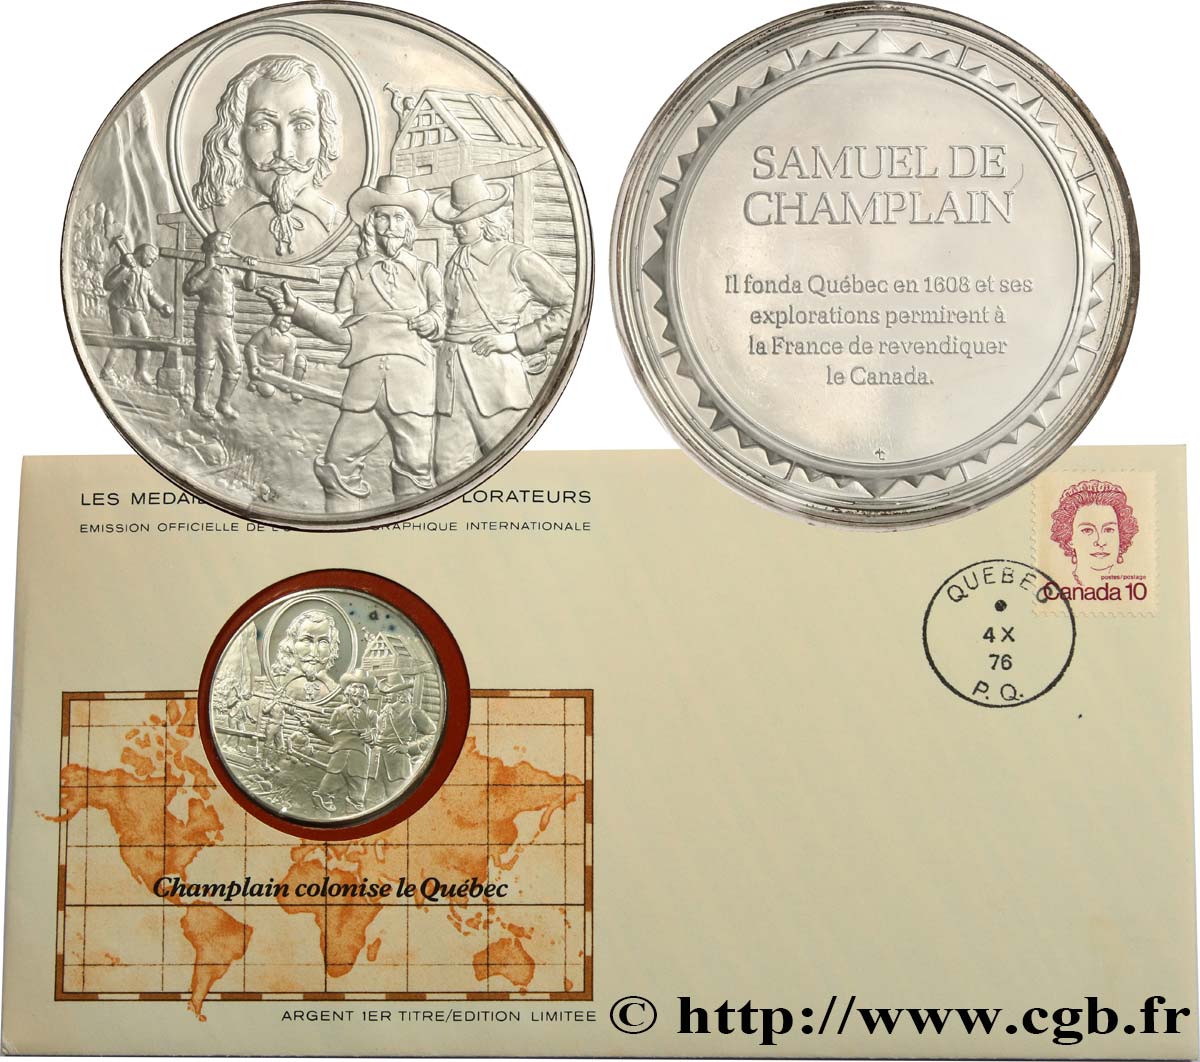 THE GREAT EXPLORERS  MEDALS Enveloppe “Timbre médaille”, Champlain colonise le Québec MS